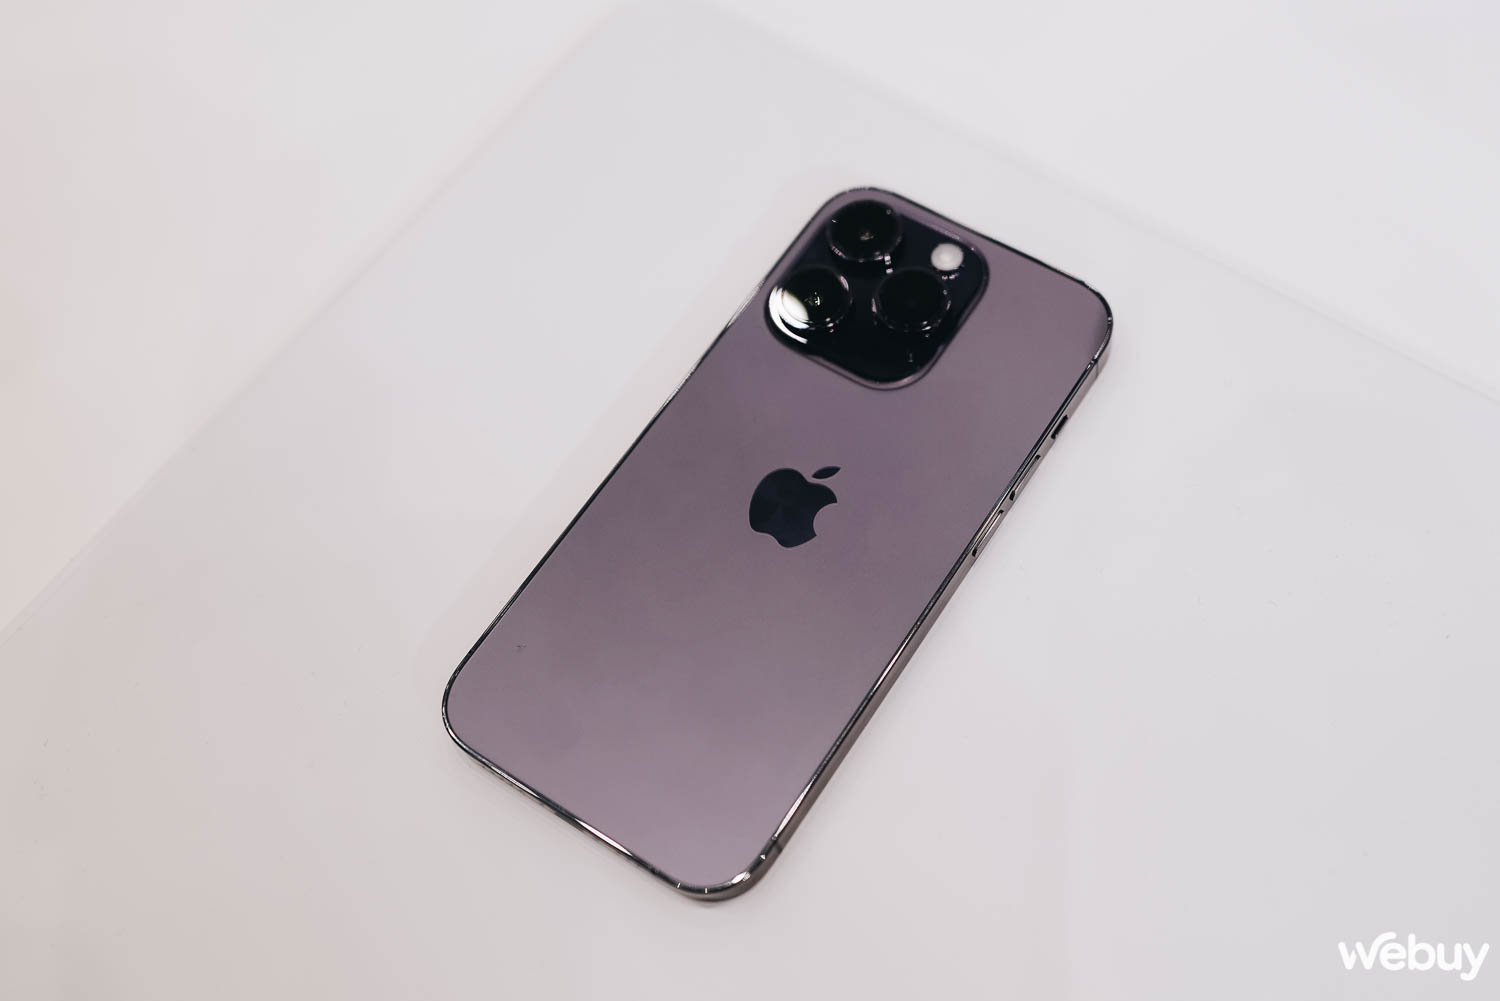 Cận cảnh iPhone 14 Pro tại sự kiện Apple: Thiết kế &quot;Dynamic Island&quot;, màu tím Deep Purple, loại bỏ khay SIM, giá không đổi - Ảnh 2.